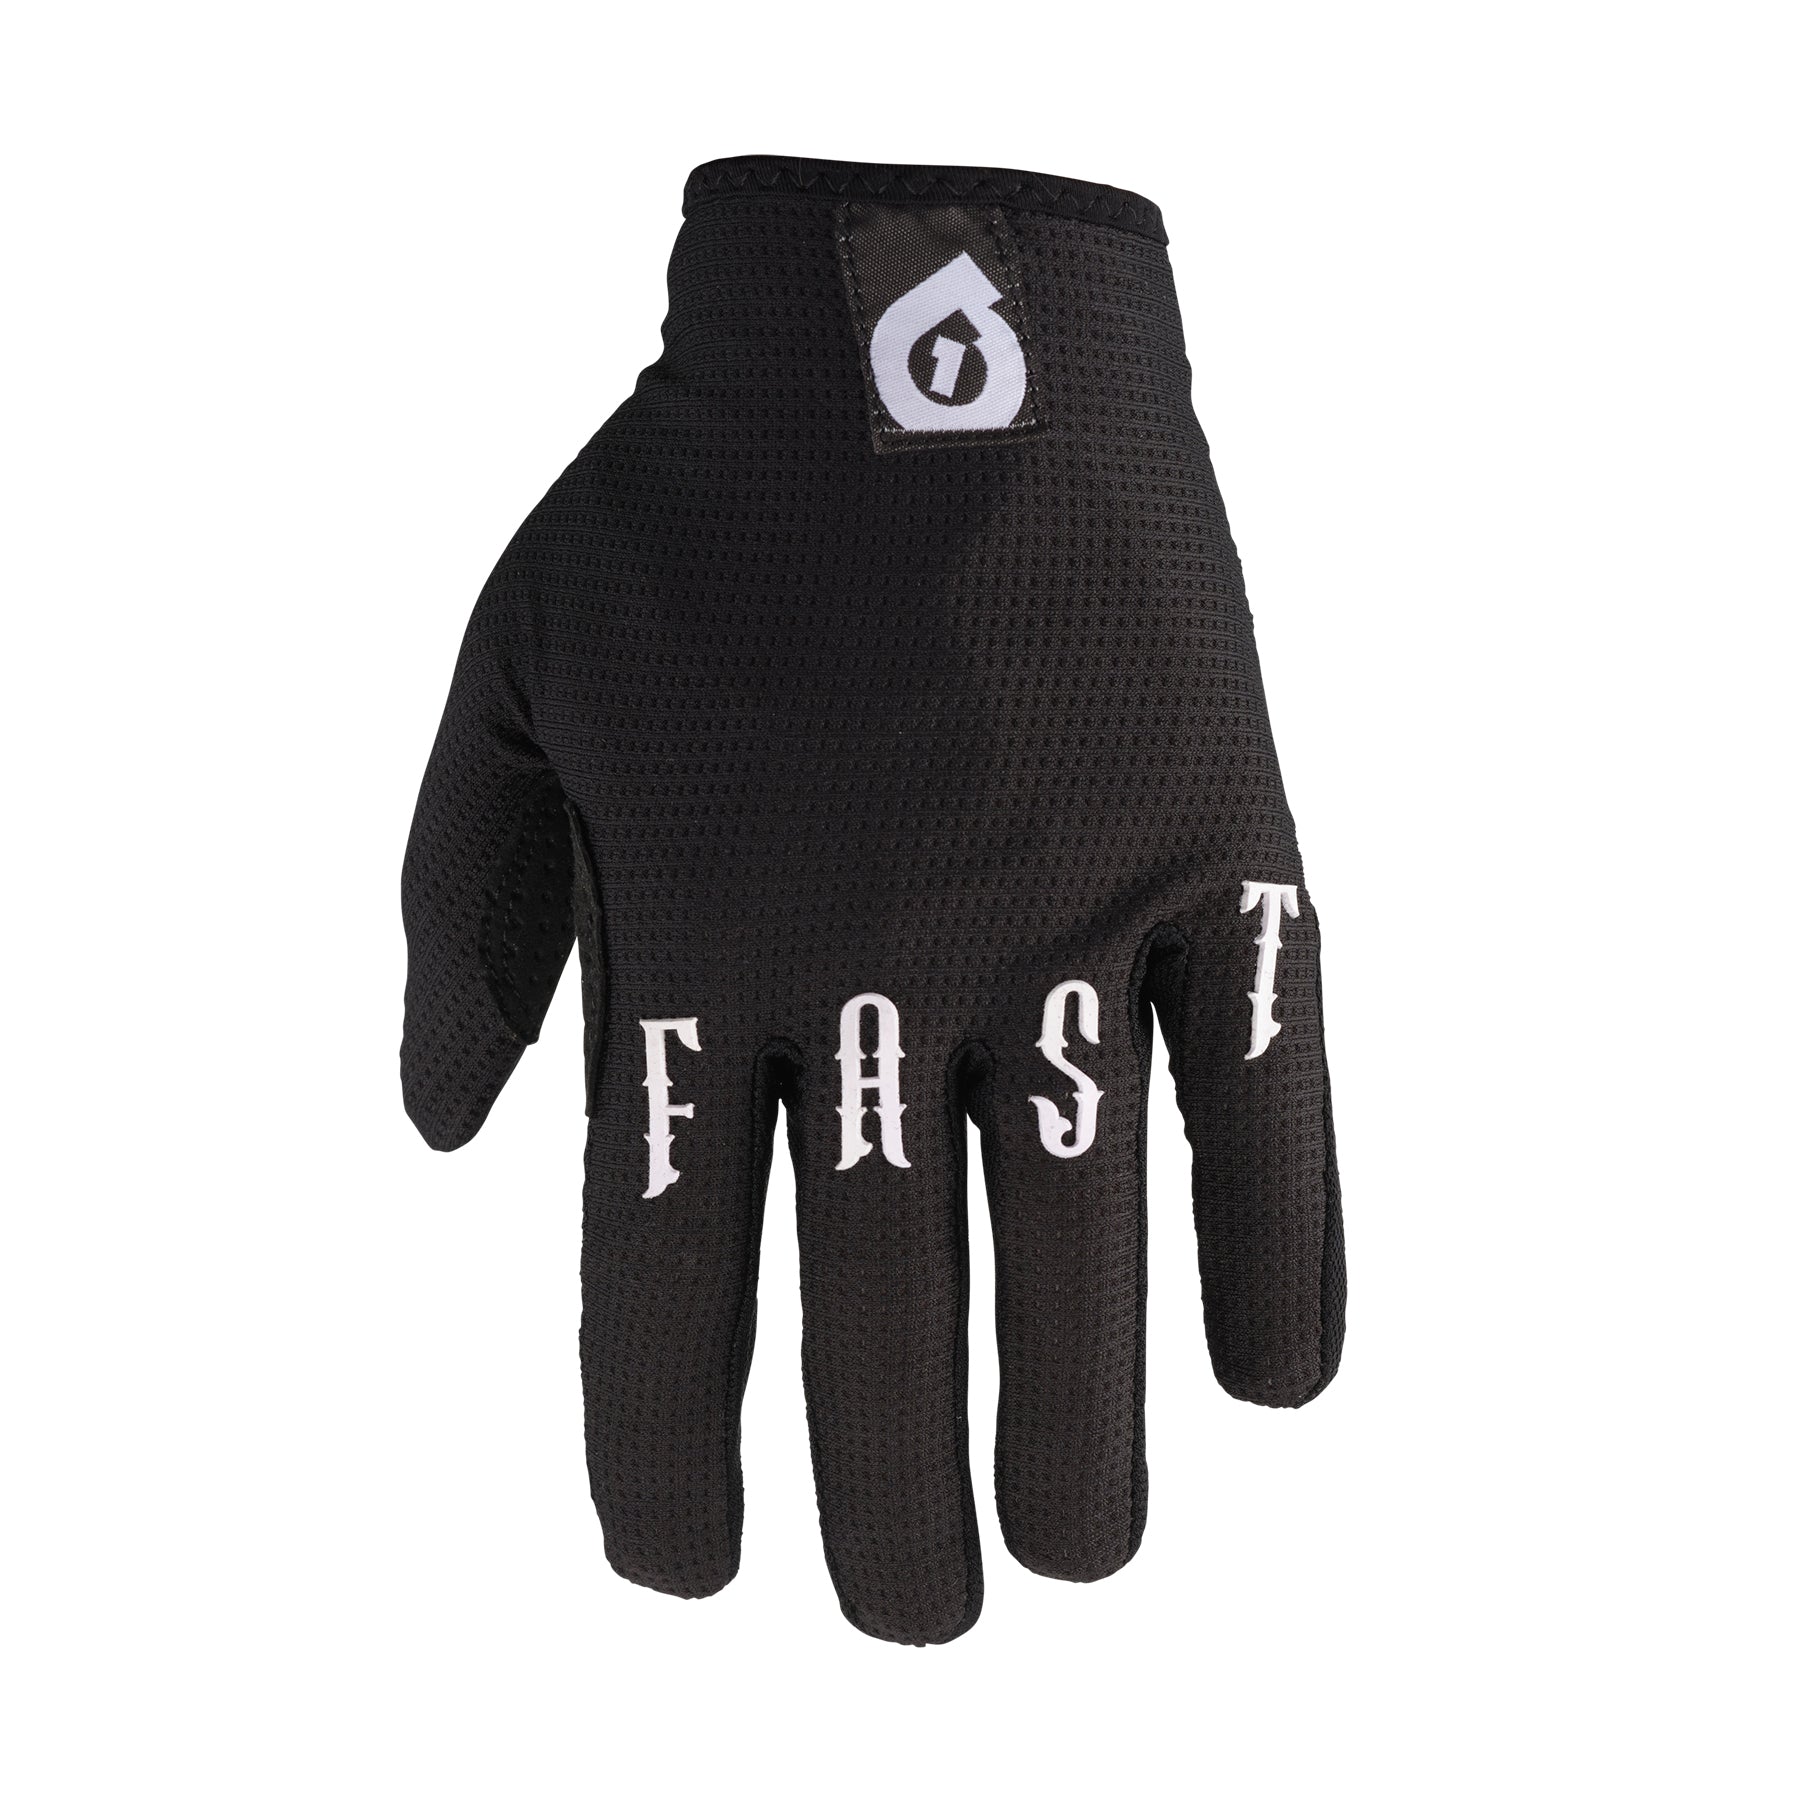 Evo II Gloves, Six Six One